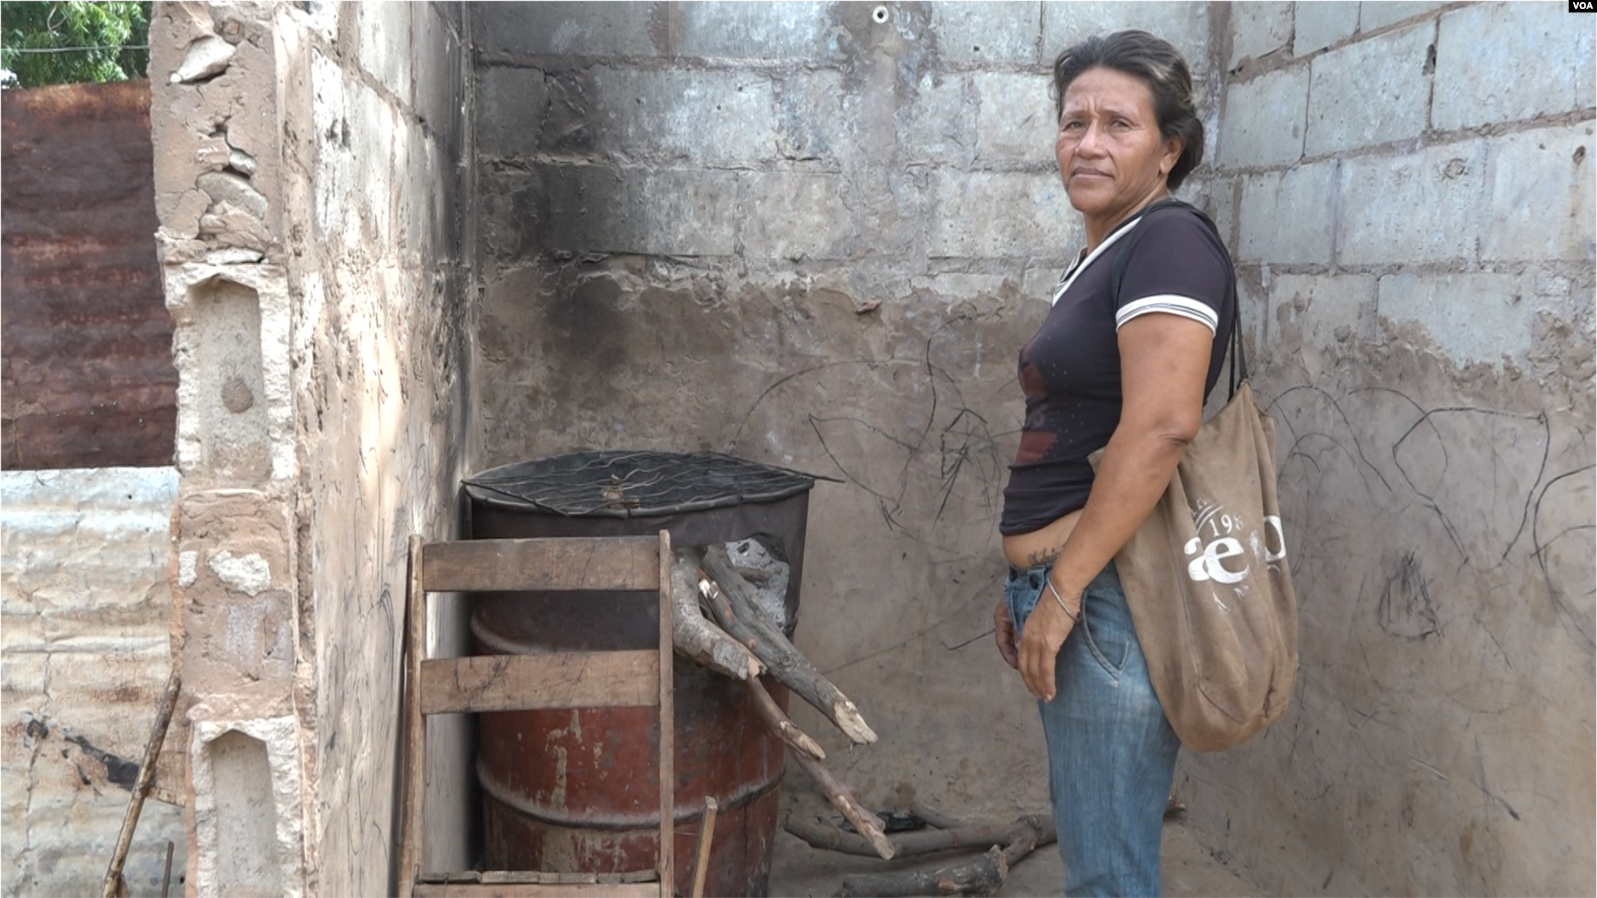 Con leña, la rudimentaria técnica de cocinar en Venezuela a falta de gas (Fotos)